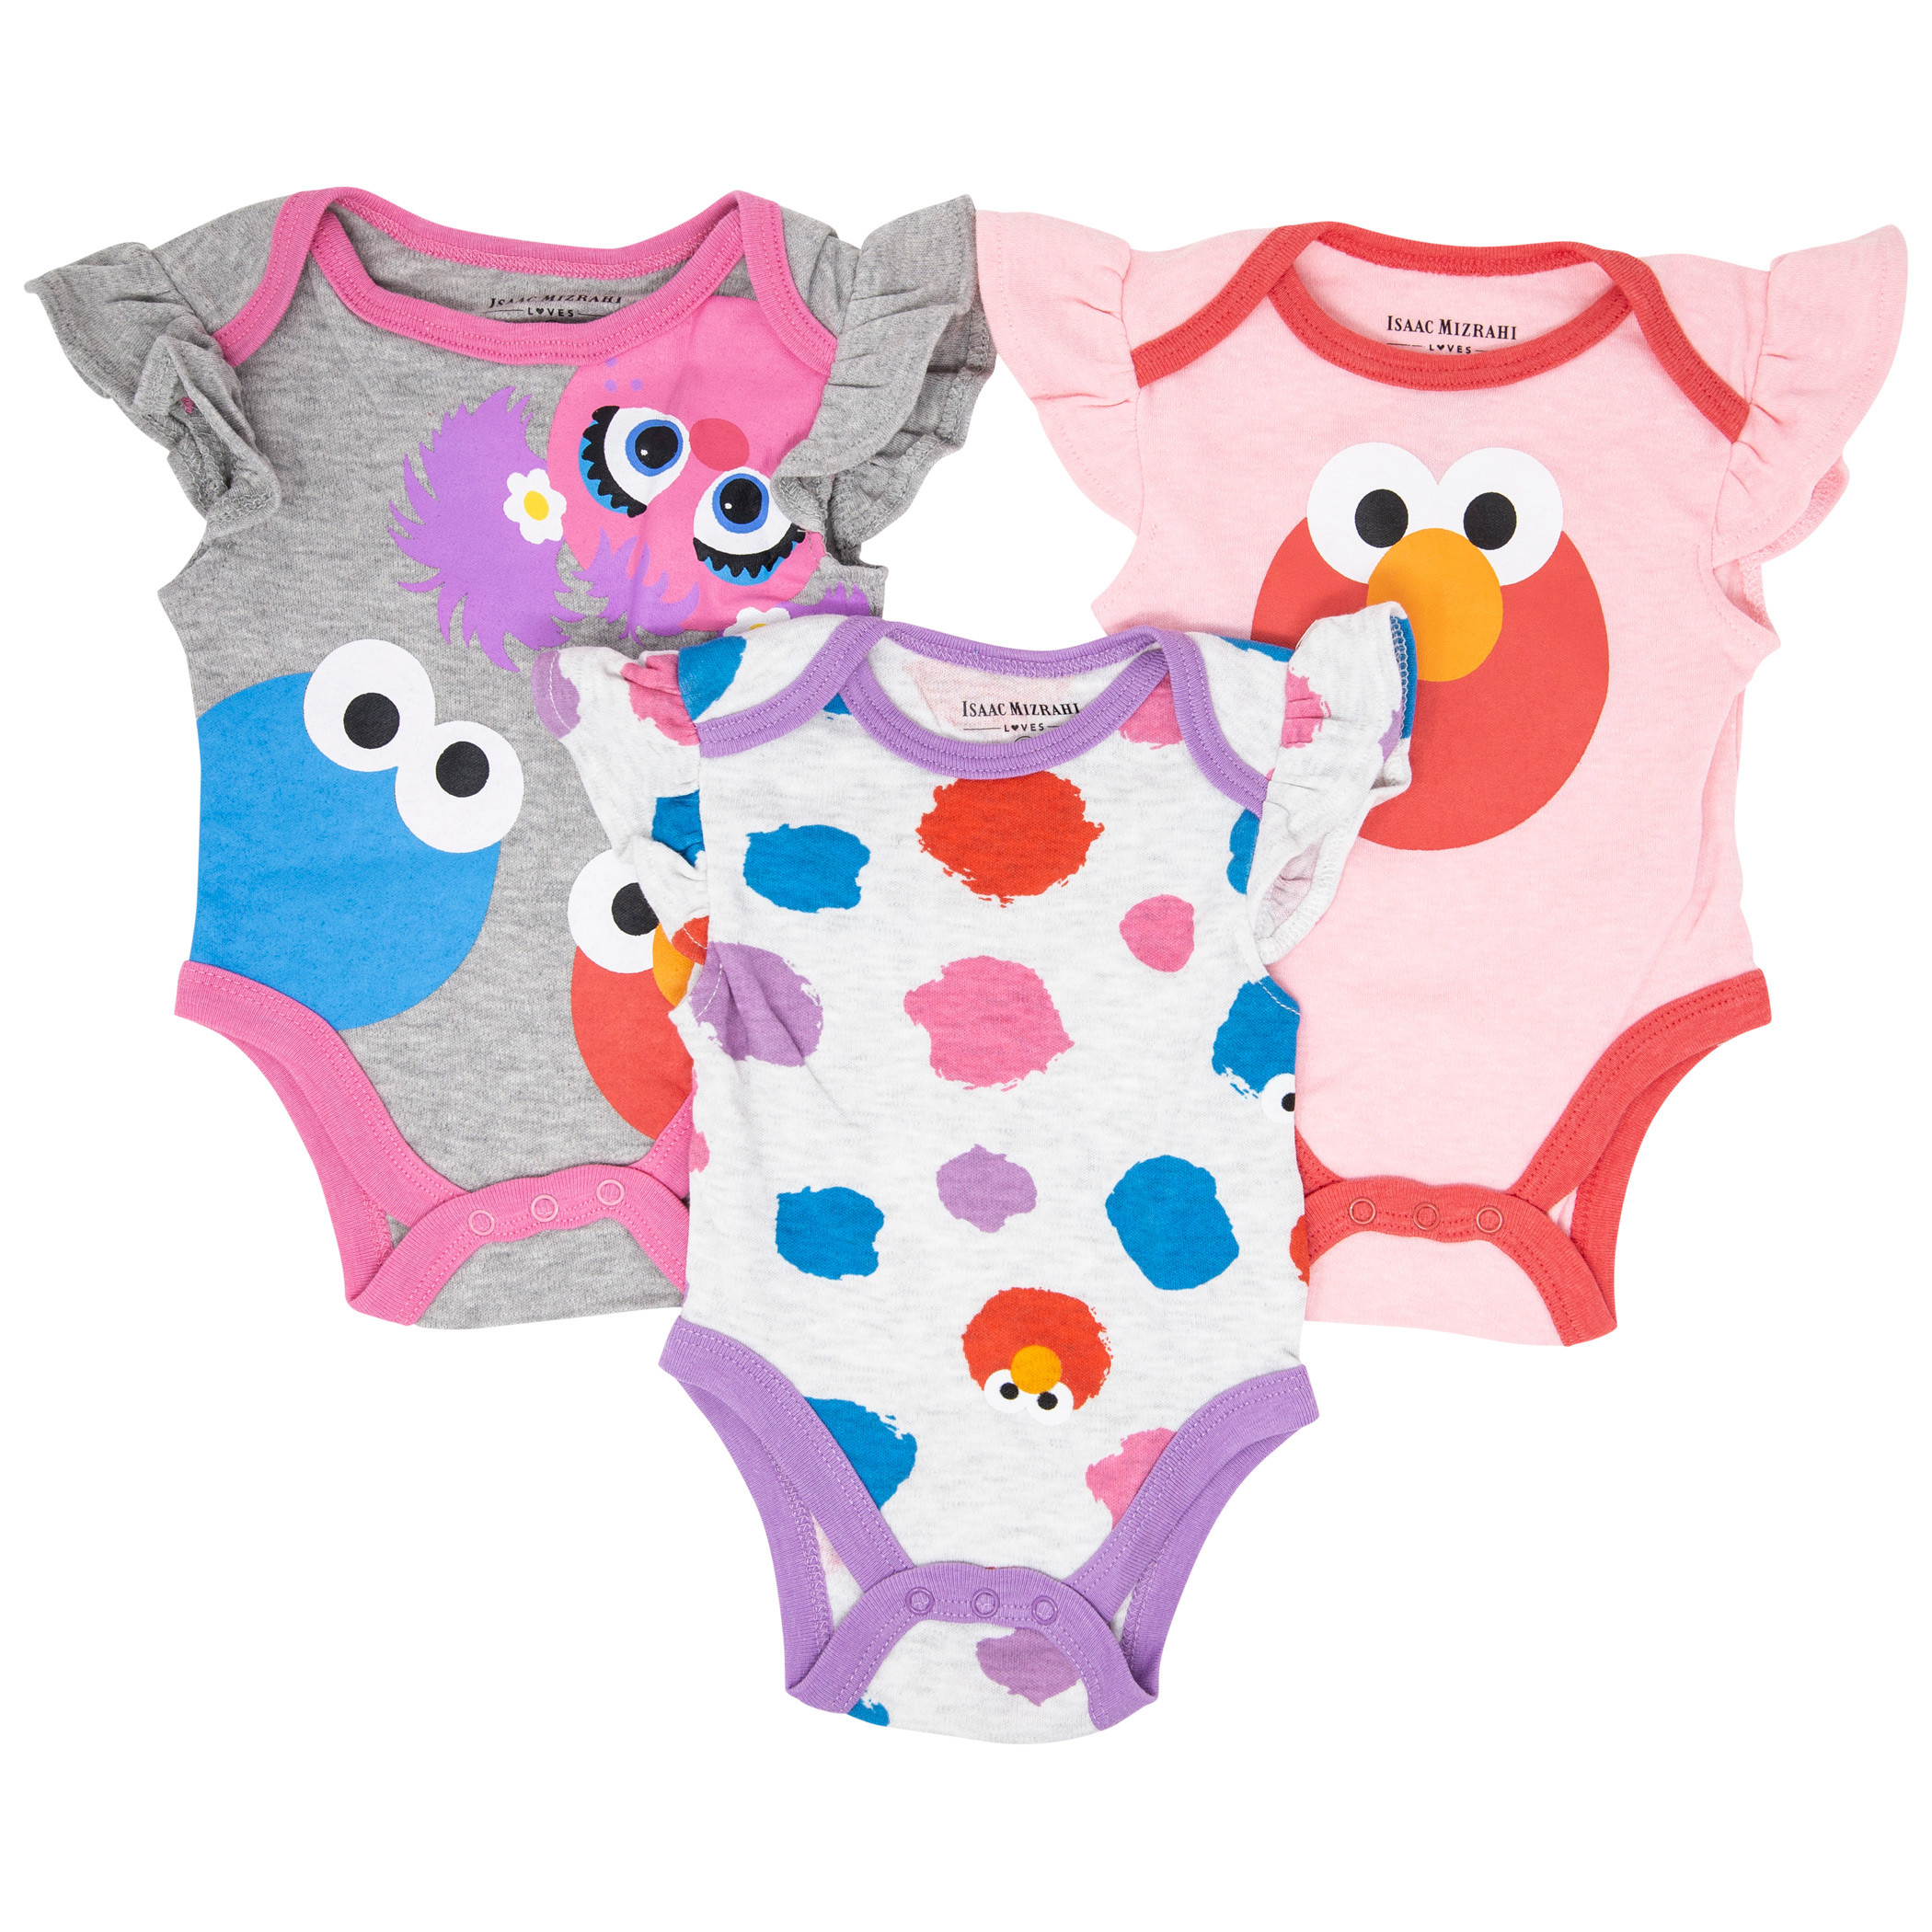 Elmo and Sesame Street 3-Pack Infant Bodysuit Set